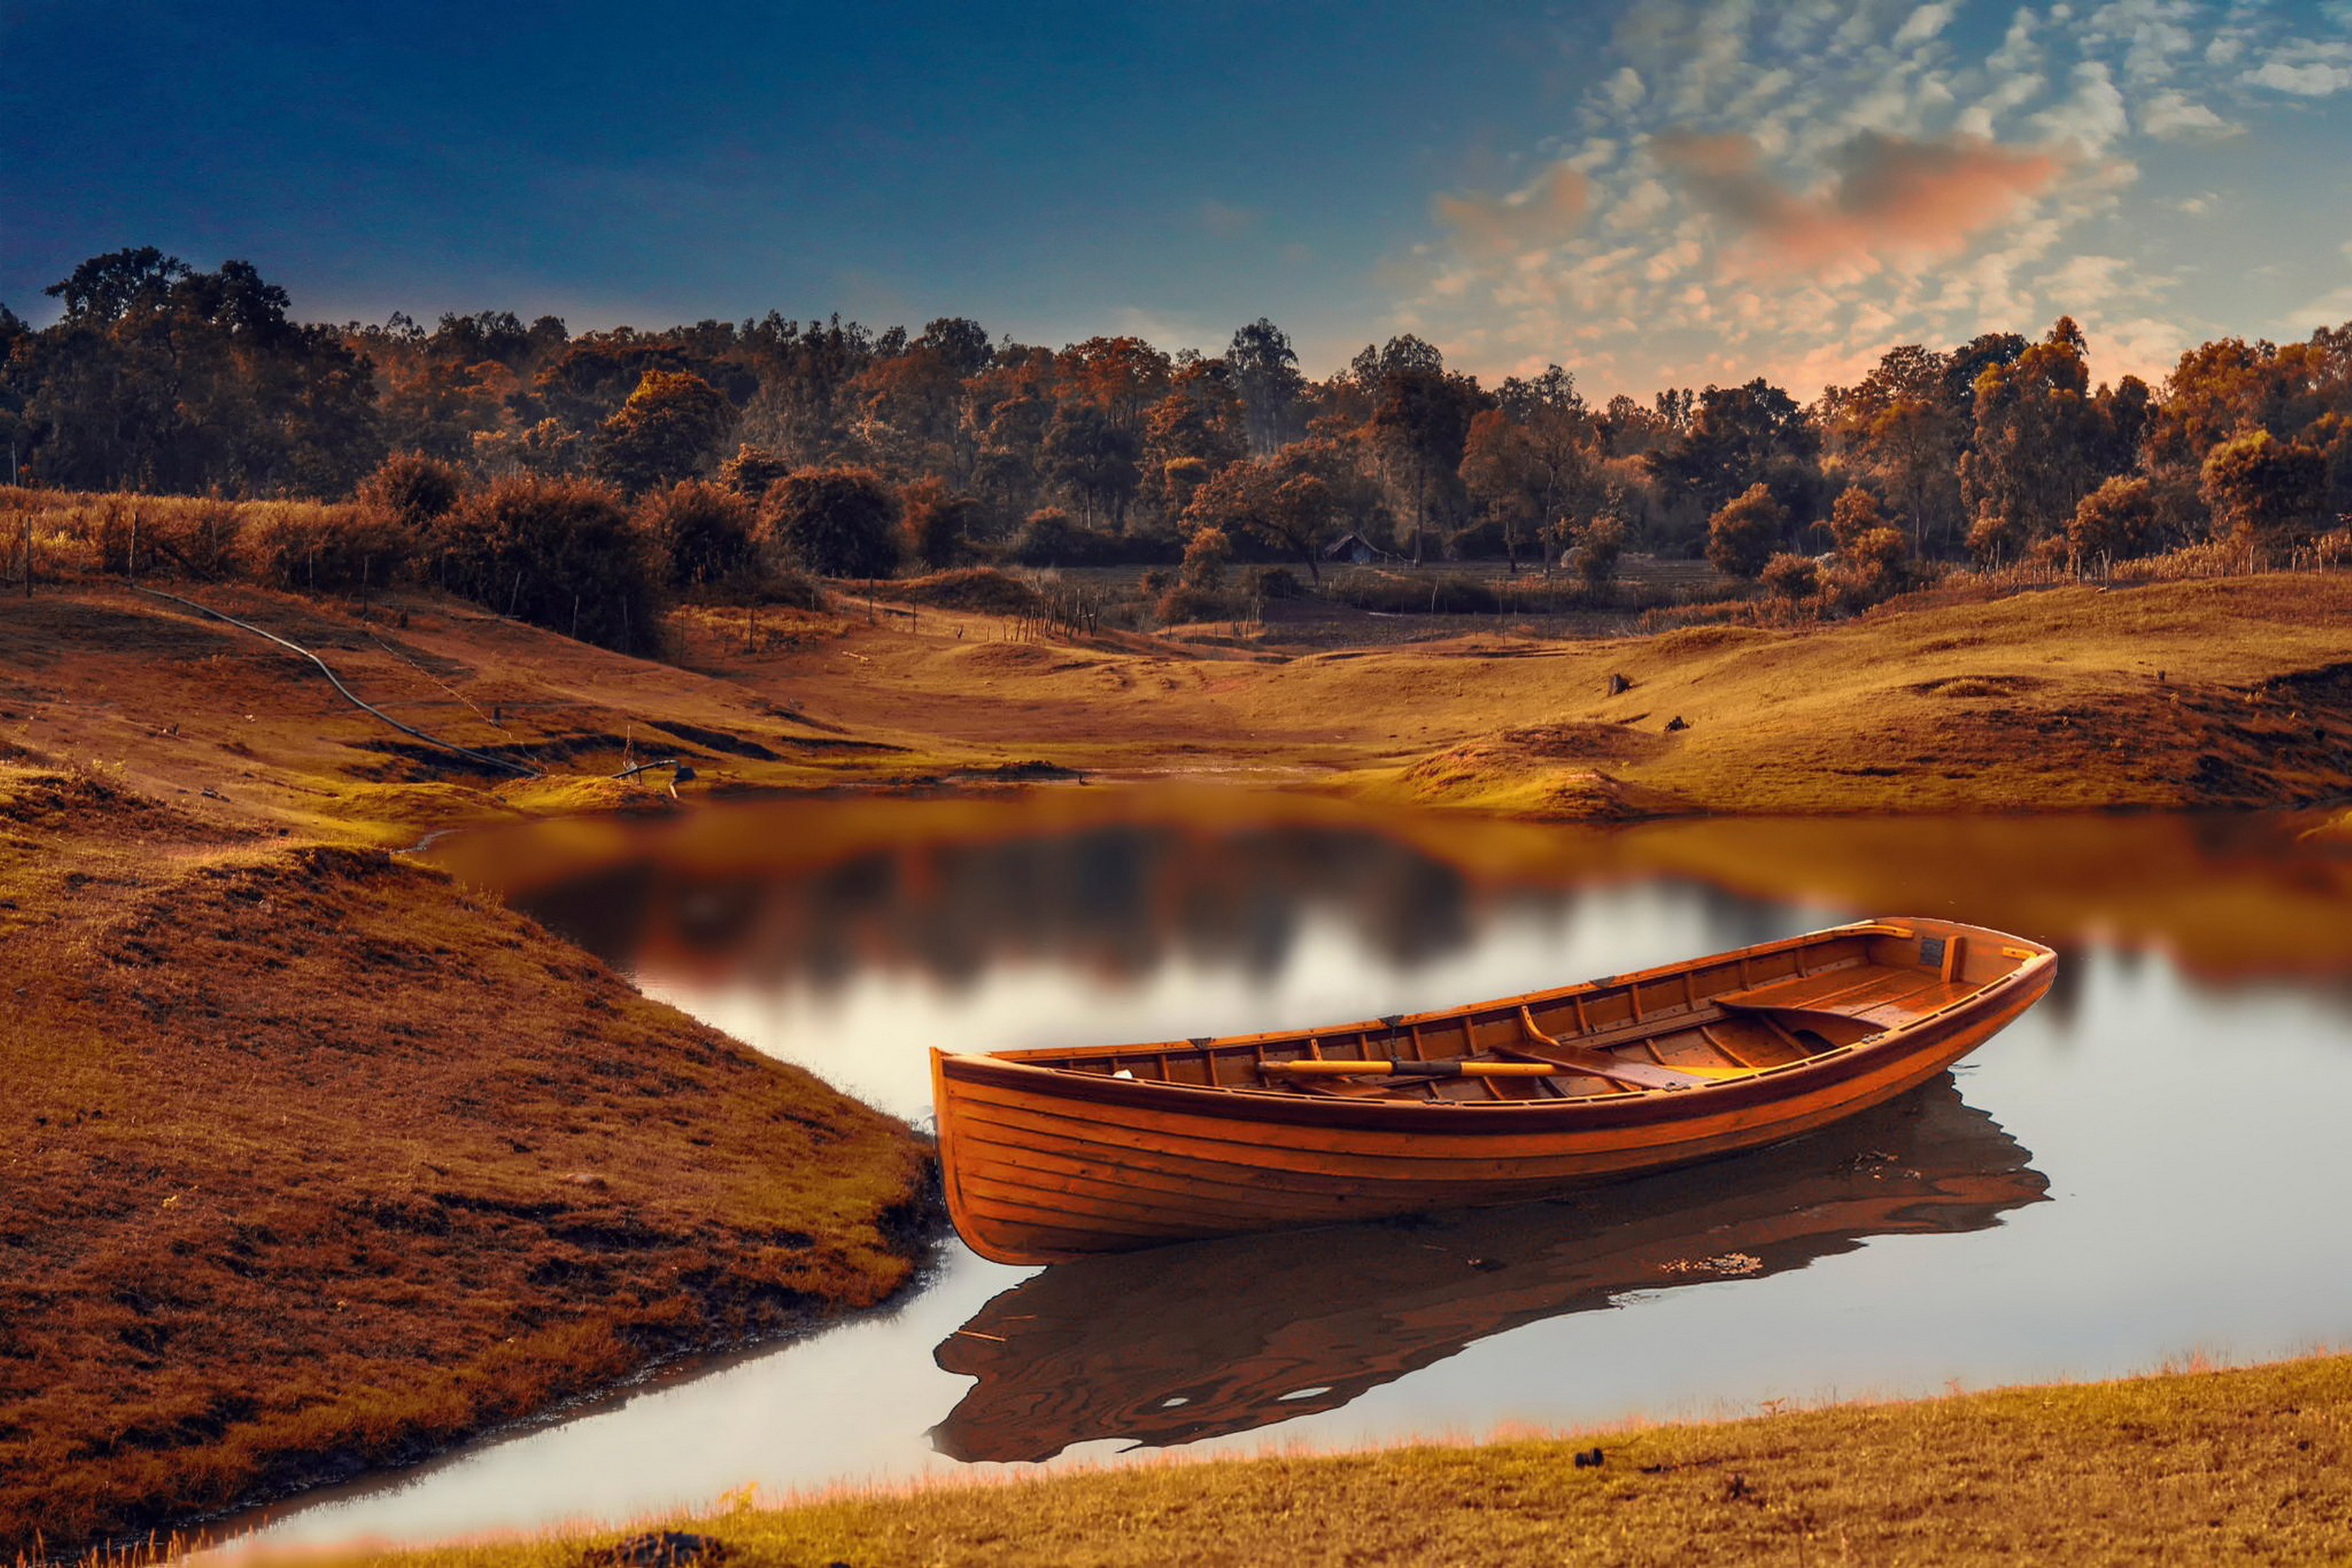 Картинки на тему. Пейзаж в коричневых тонах. Красивая лодка. Пейзаж с лодкой. Лодка на реке.